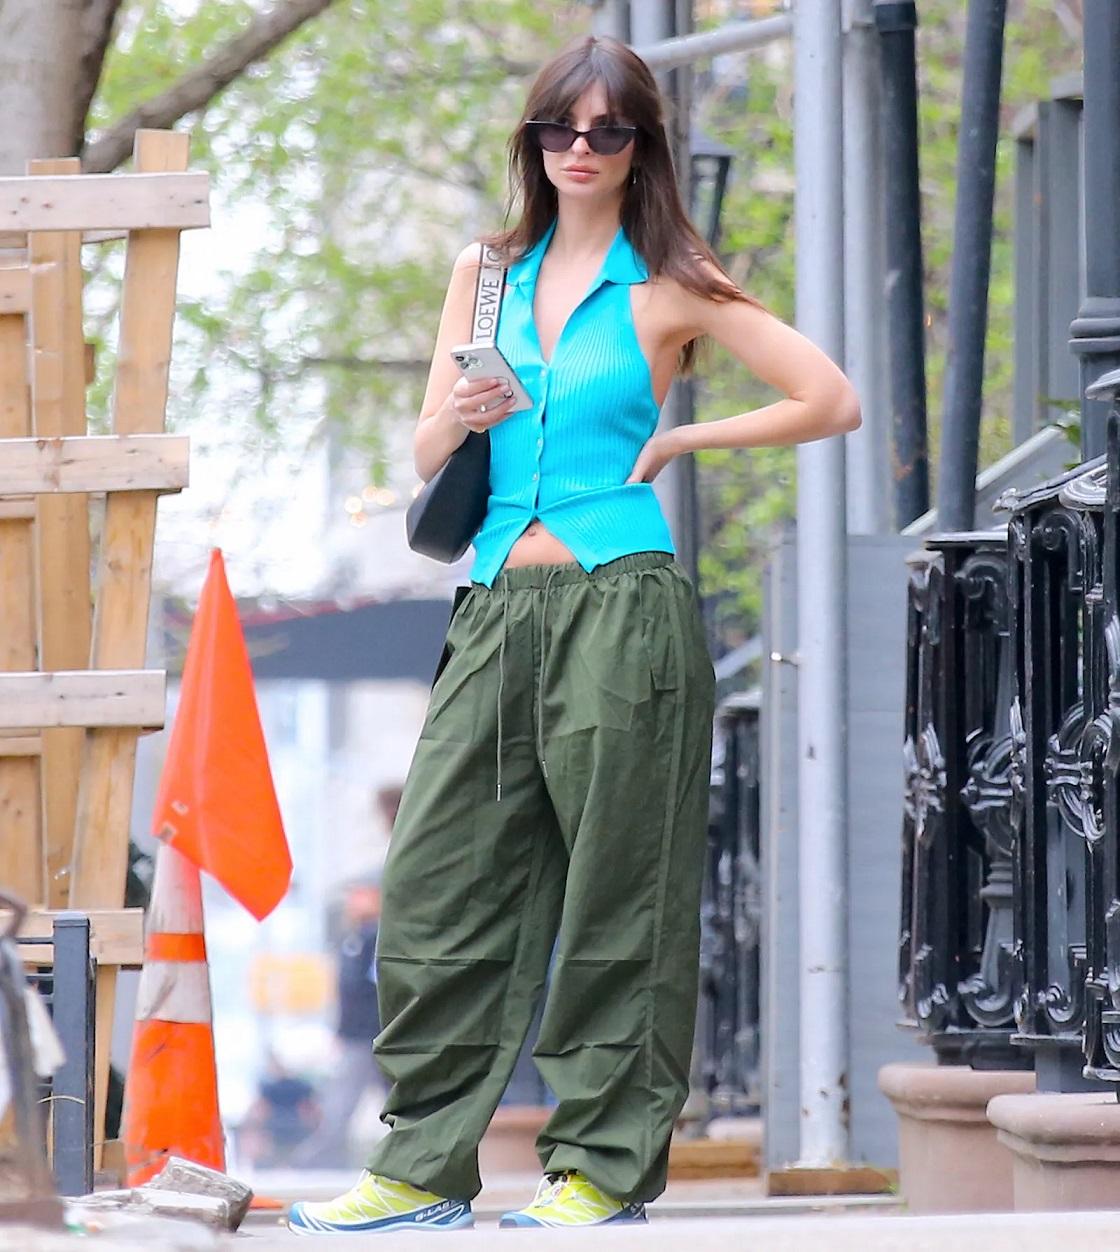 Emily Ratajkowski sa v uliciach New Yorku predviedla v retro outfite